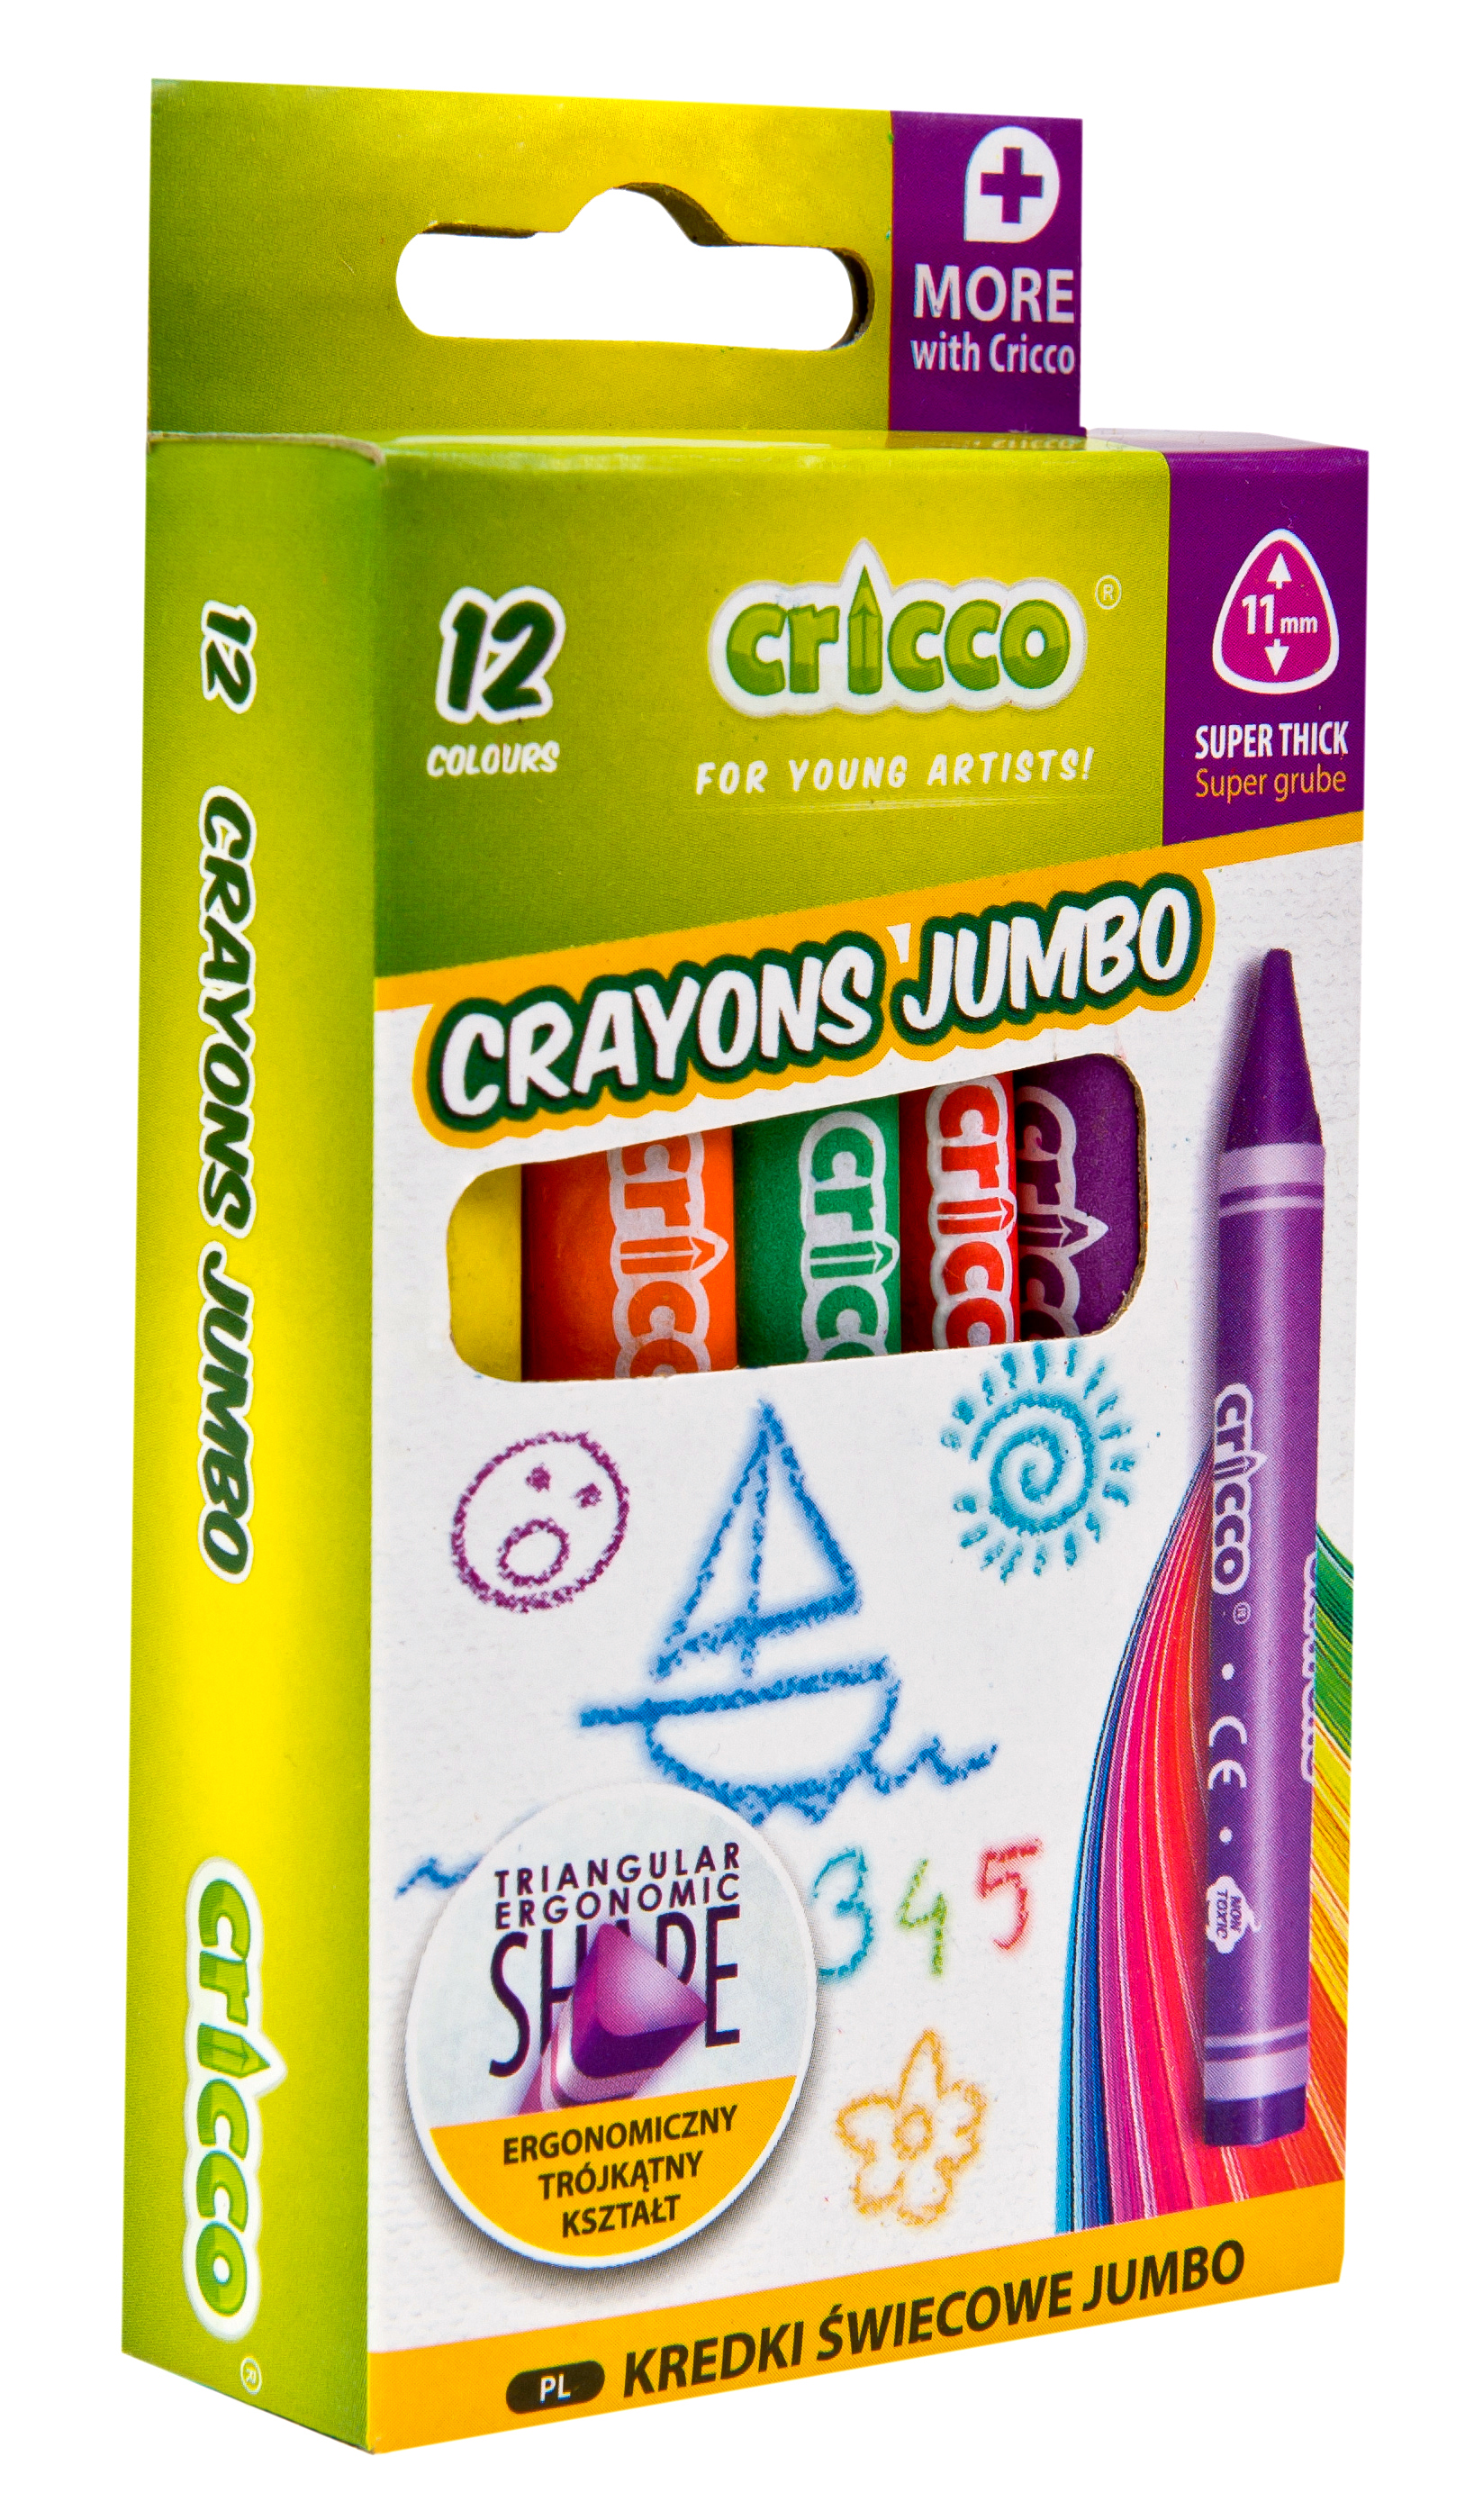 CRICCO crayons jumbo